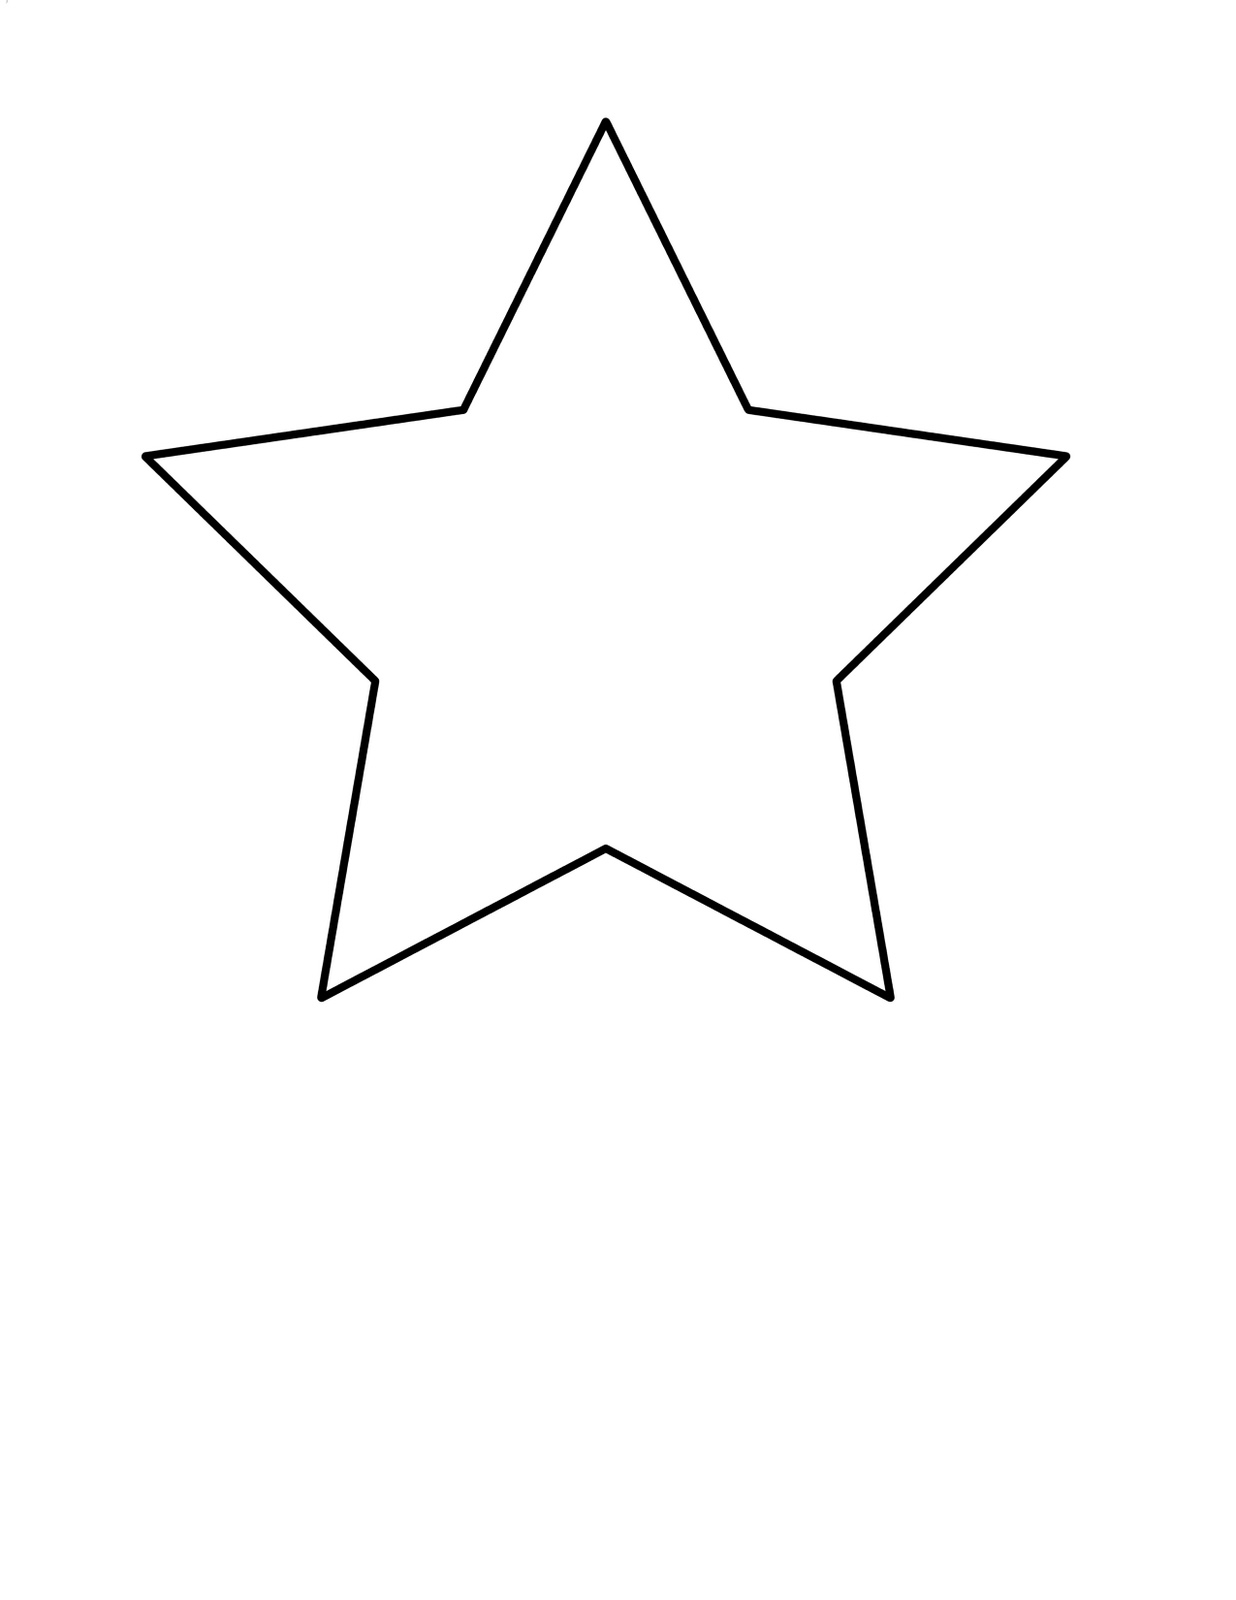 5 Star Image